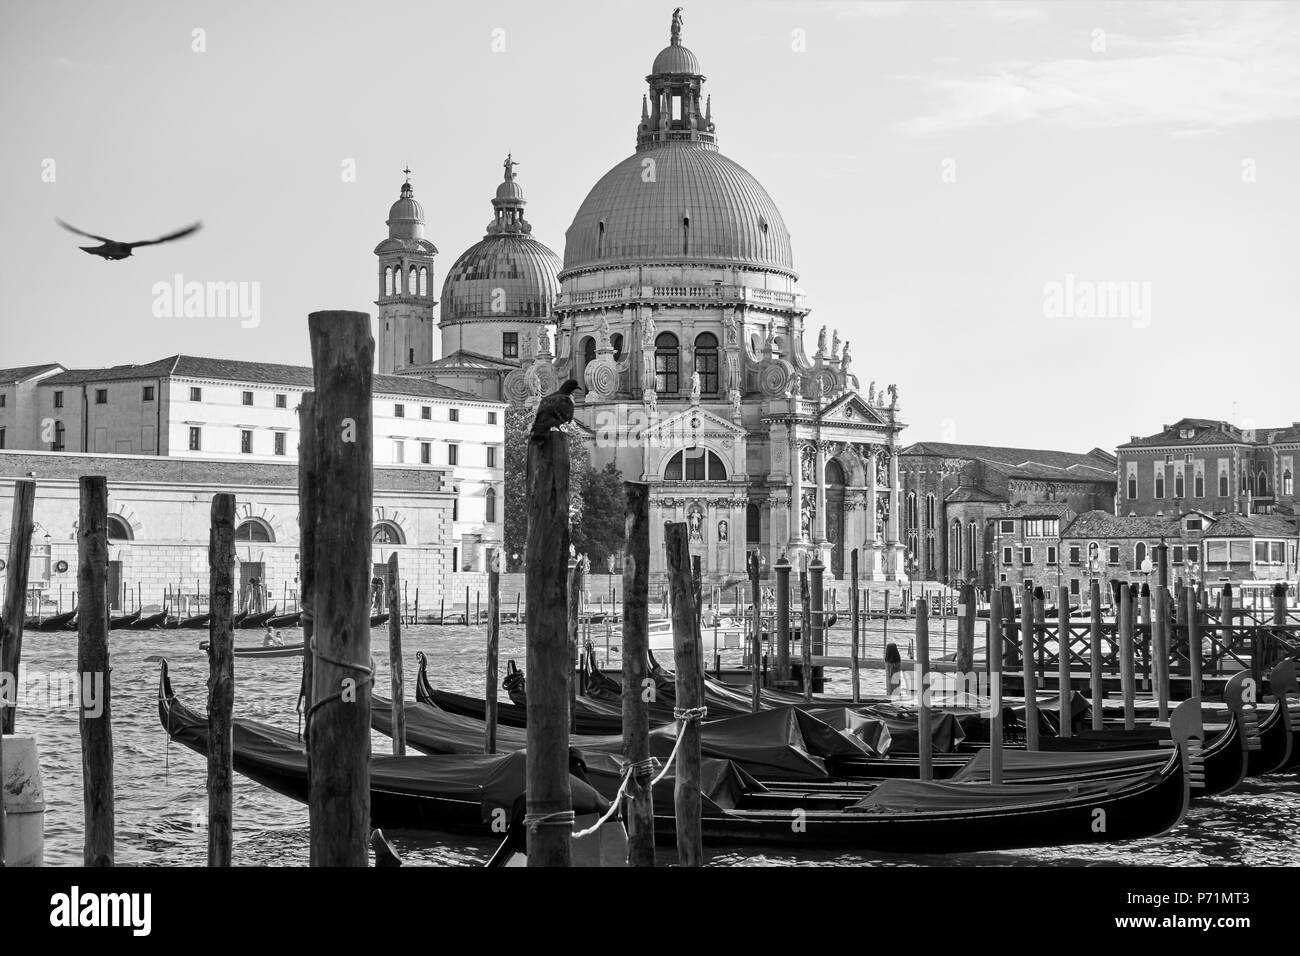 Moored gondolas and Santa Maria della Salute church in Venice, Italy. Black and white Stock Photo